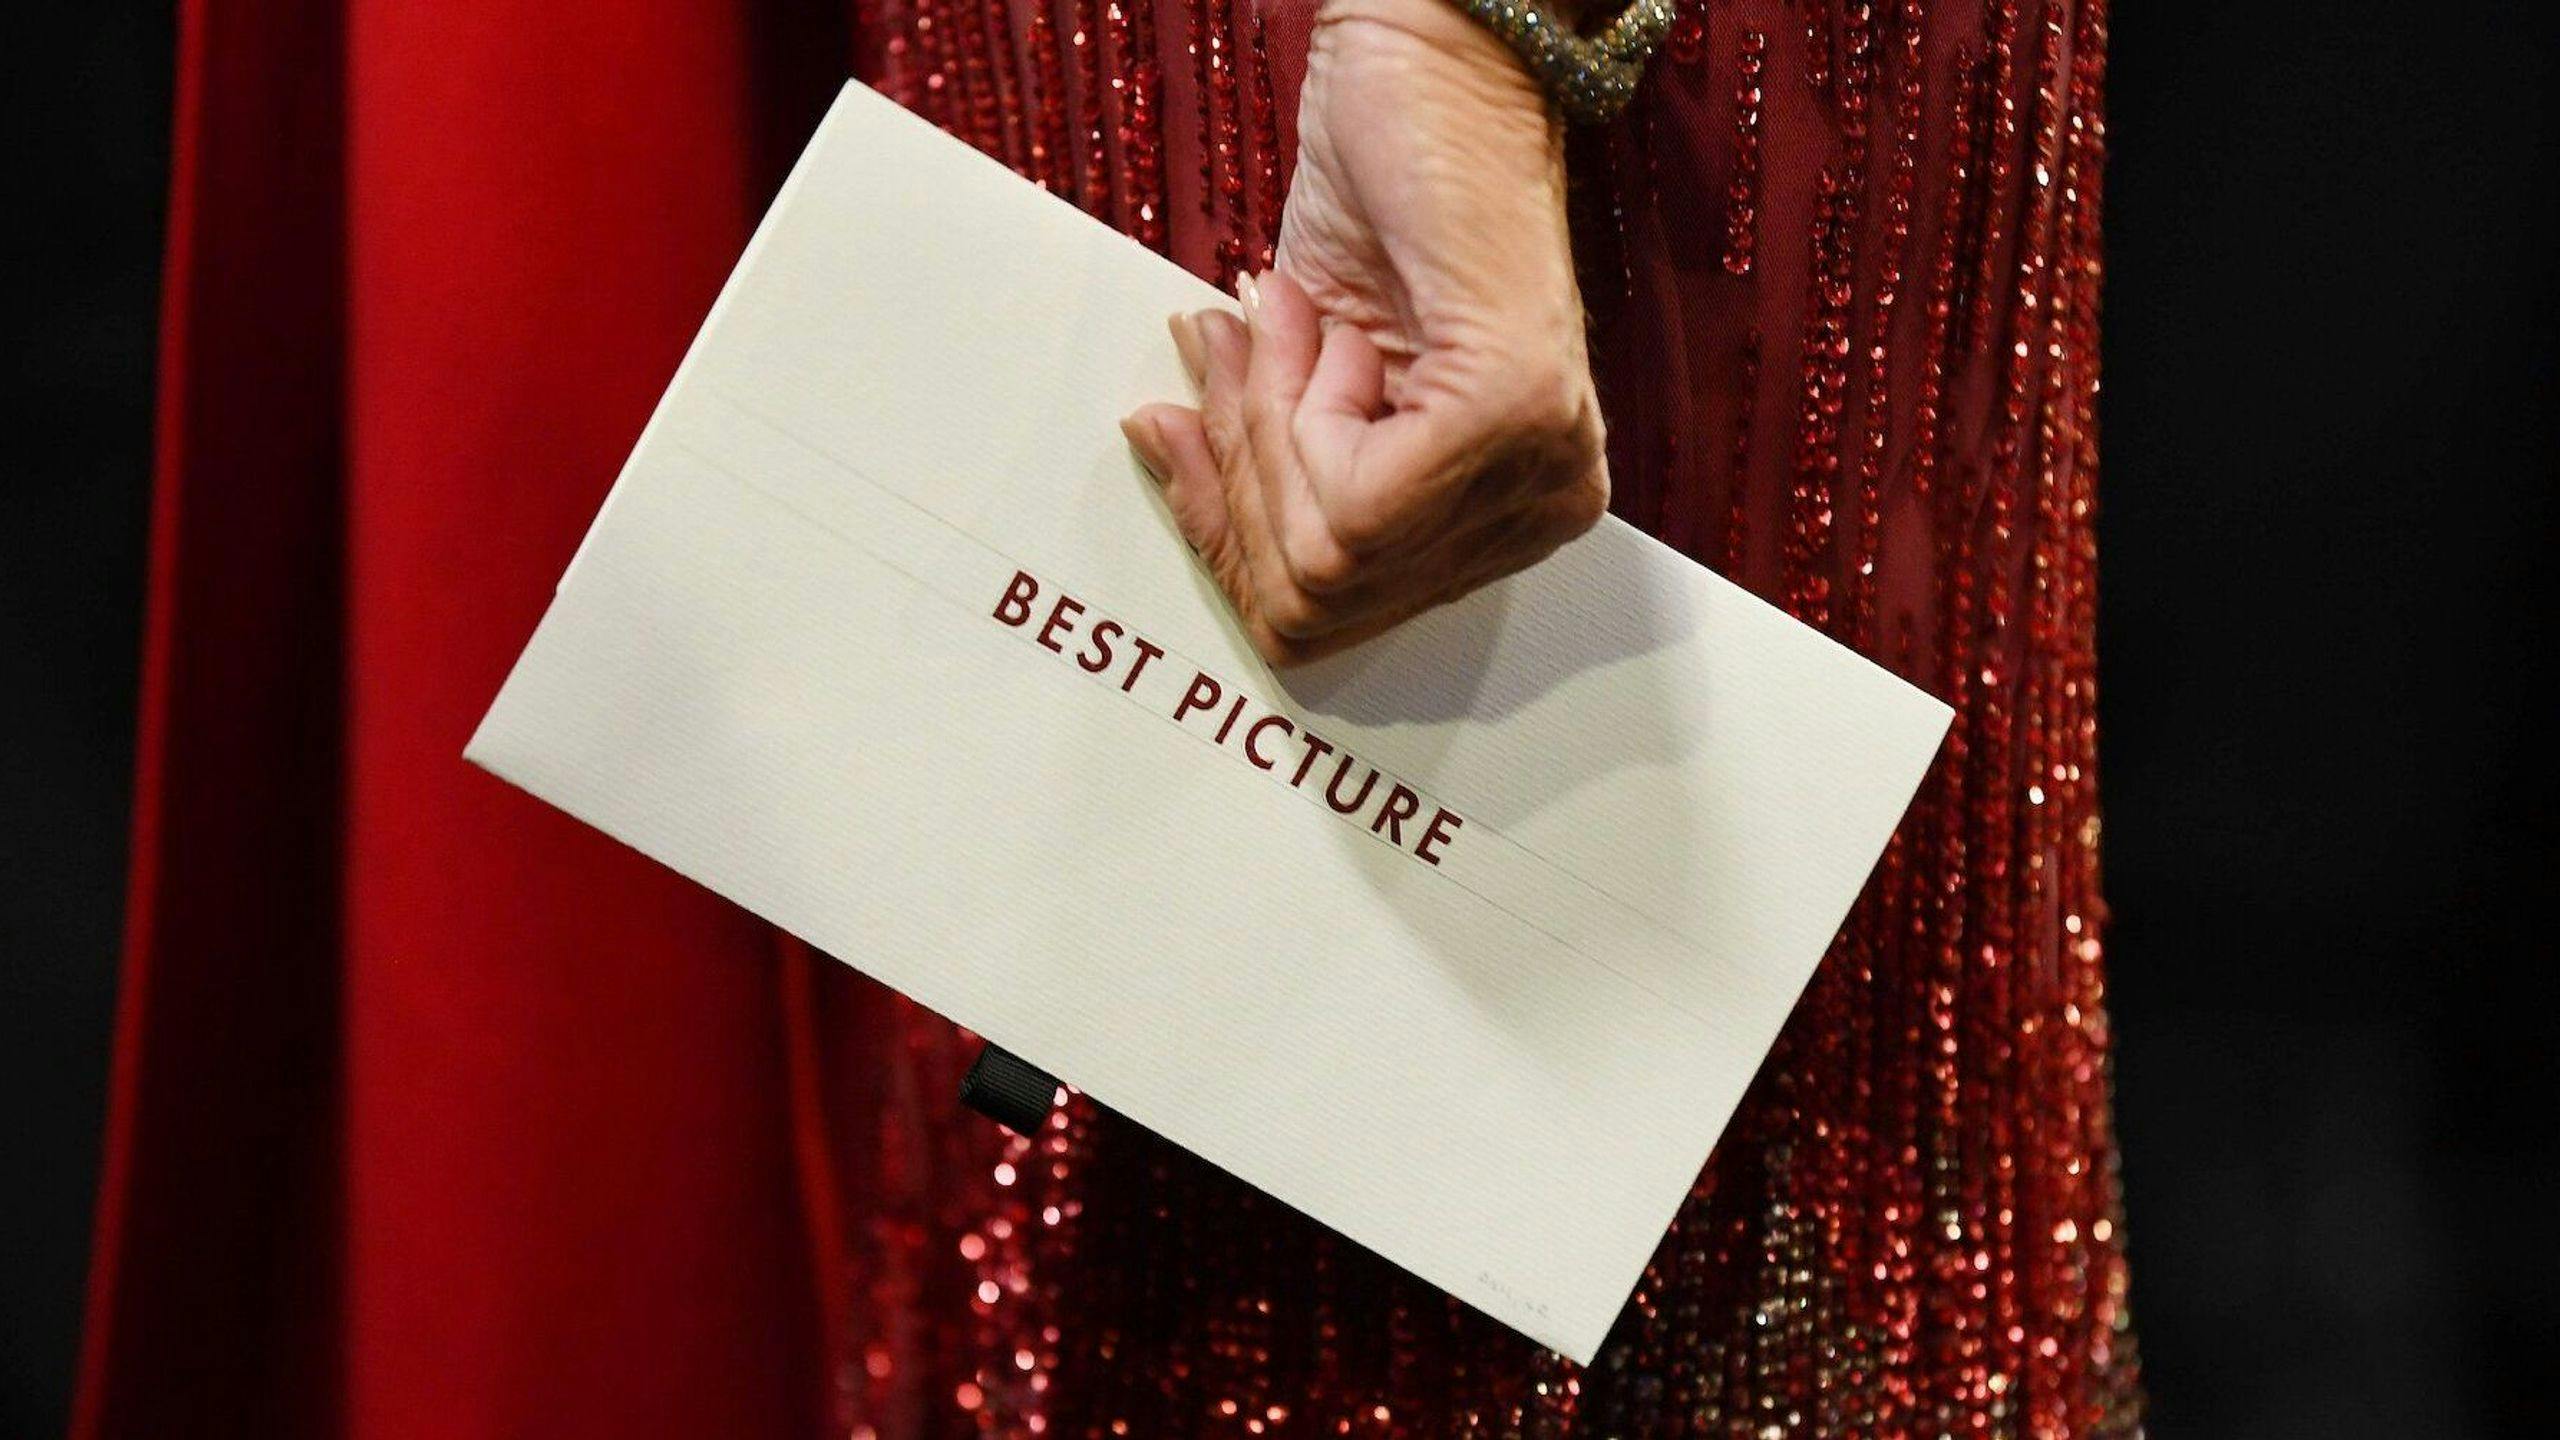 El sistema para escoger el Oscar a la Mejor Película, explicado